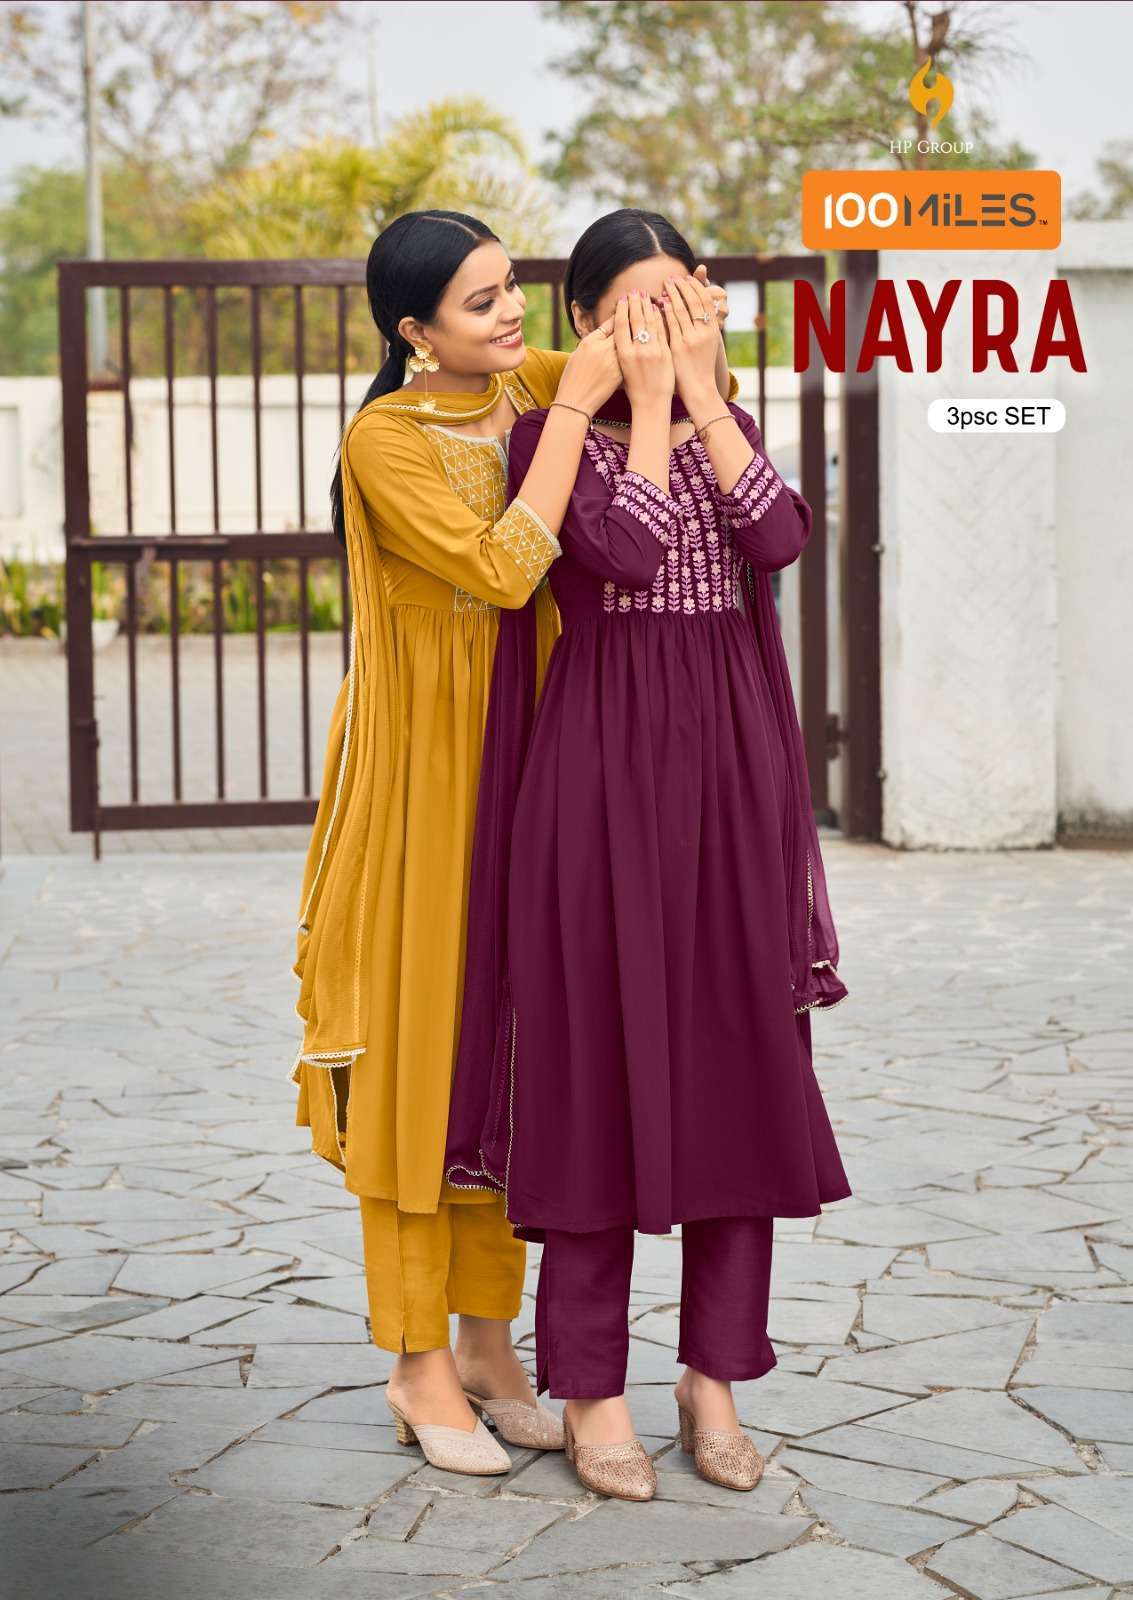 Beautiful kurti design | Frock designs for women, Stylish maternity  outfits, Stylish short dresses